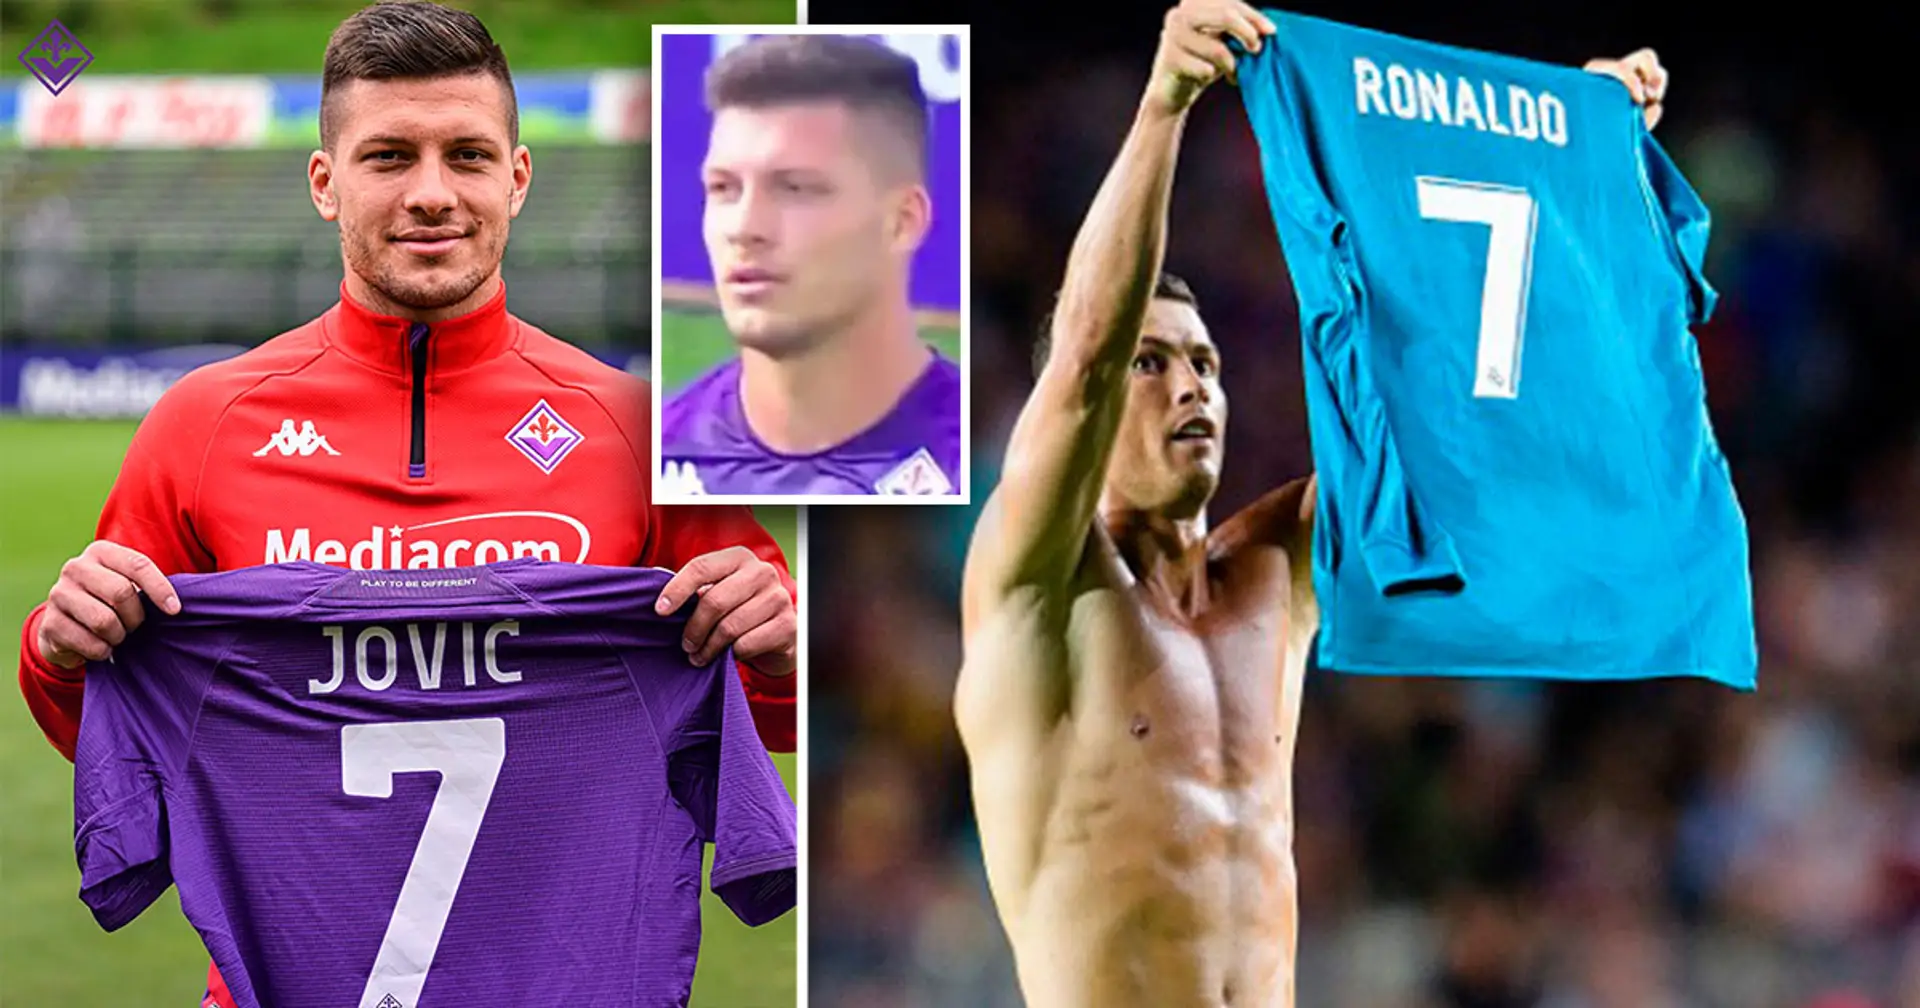 Jovic: Ich habe mich für Nummer 7 bei Fiorentina dank Ronaldo entschieden, dem größten Spieler aller Zeiten